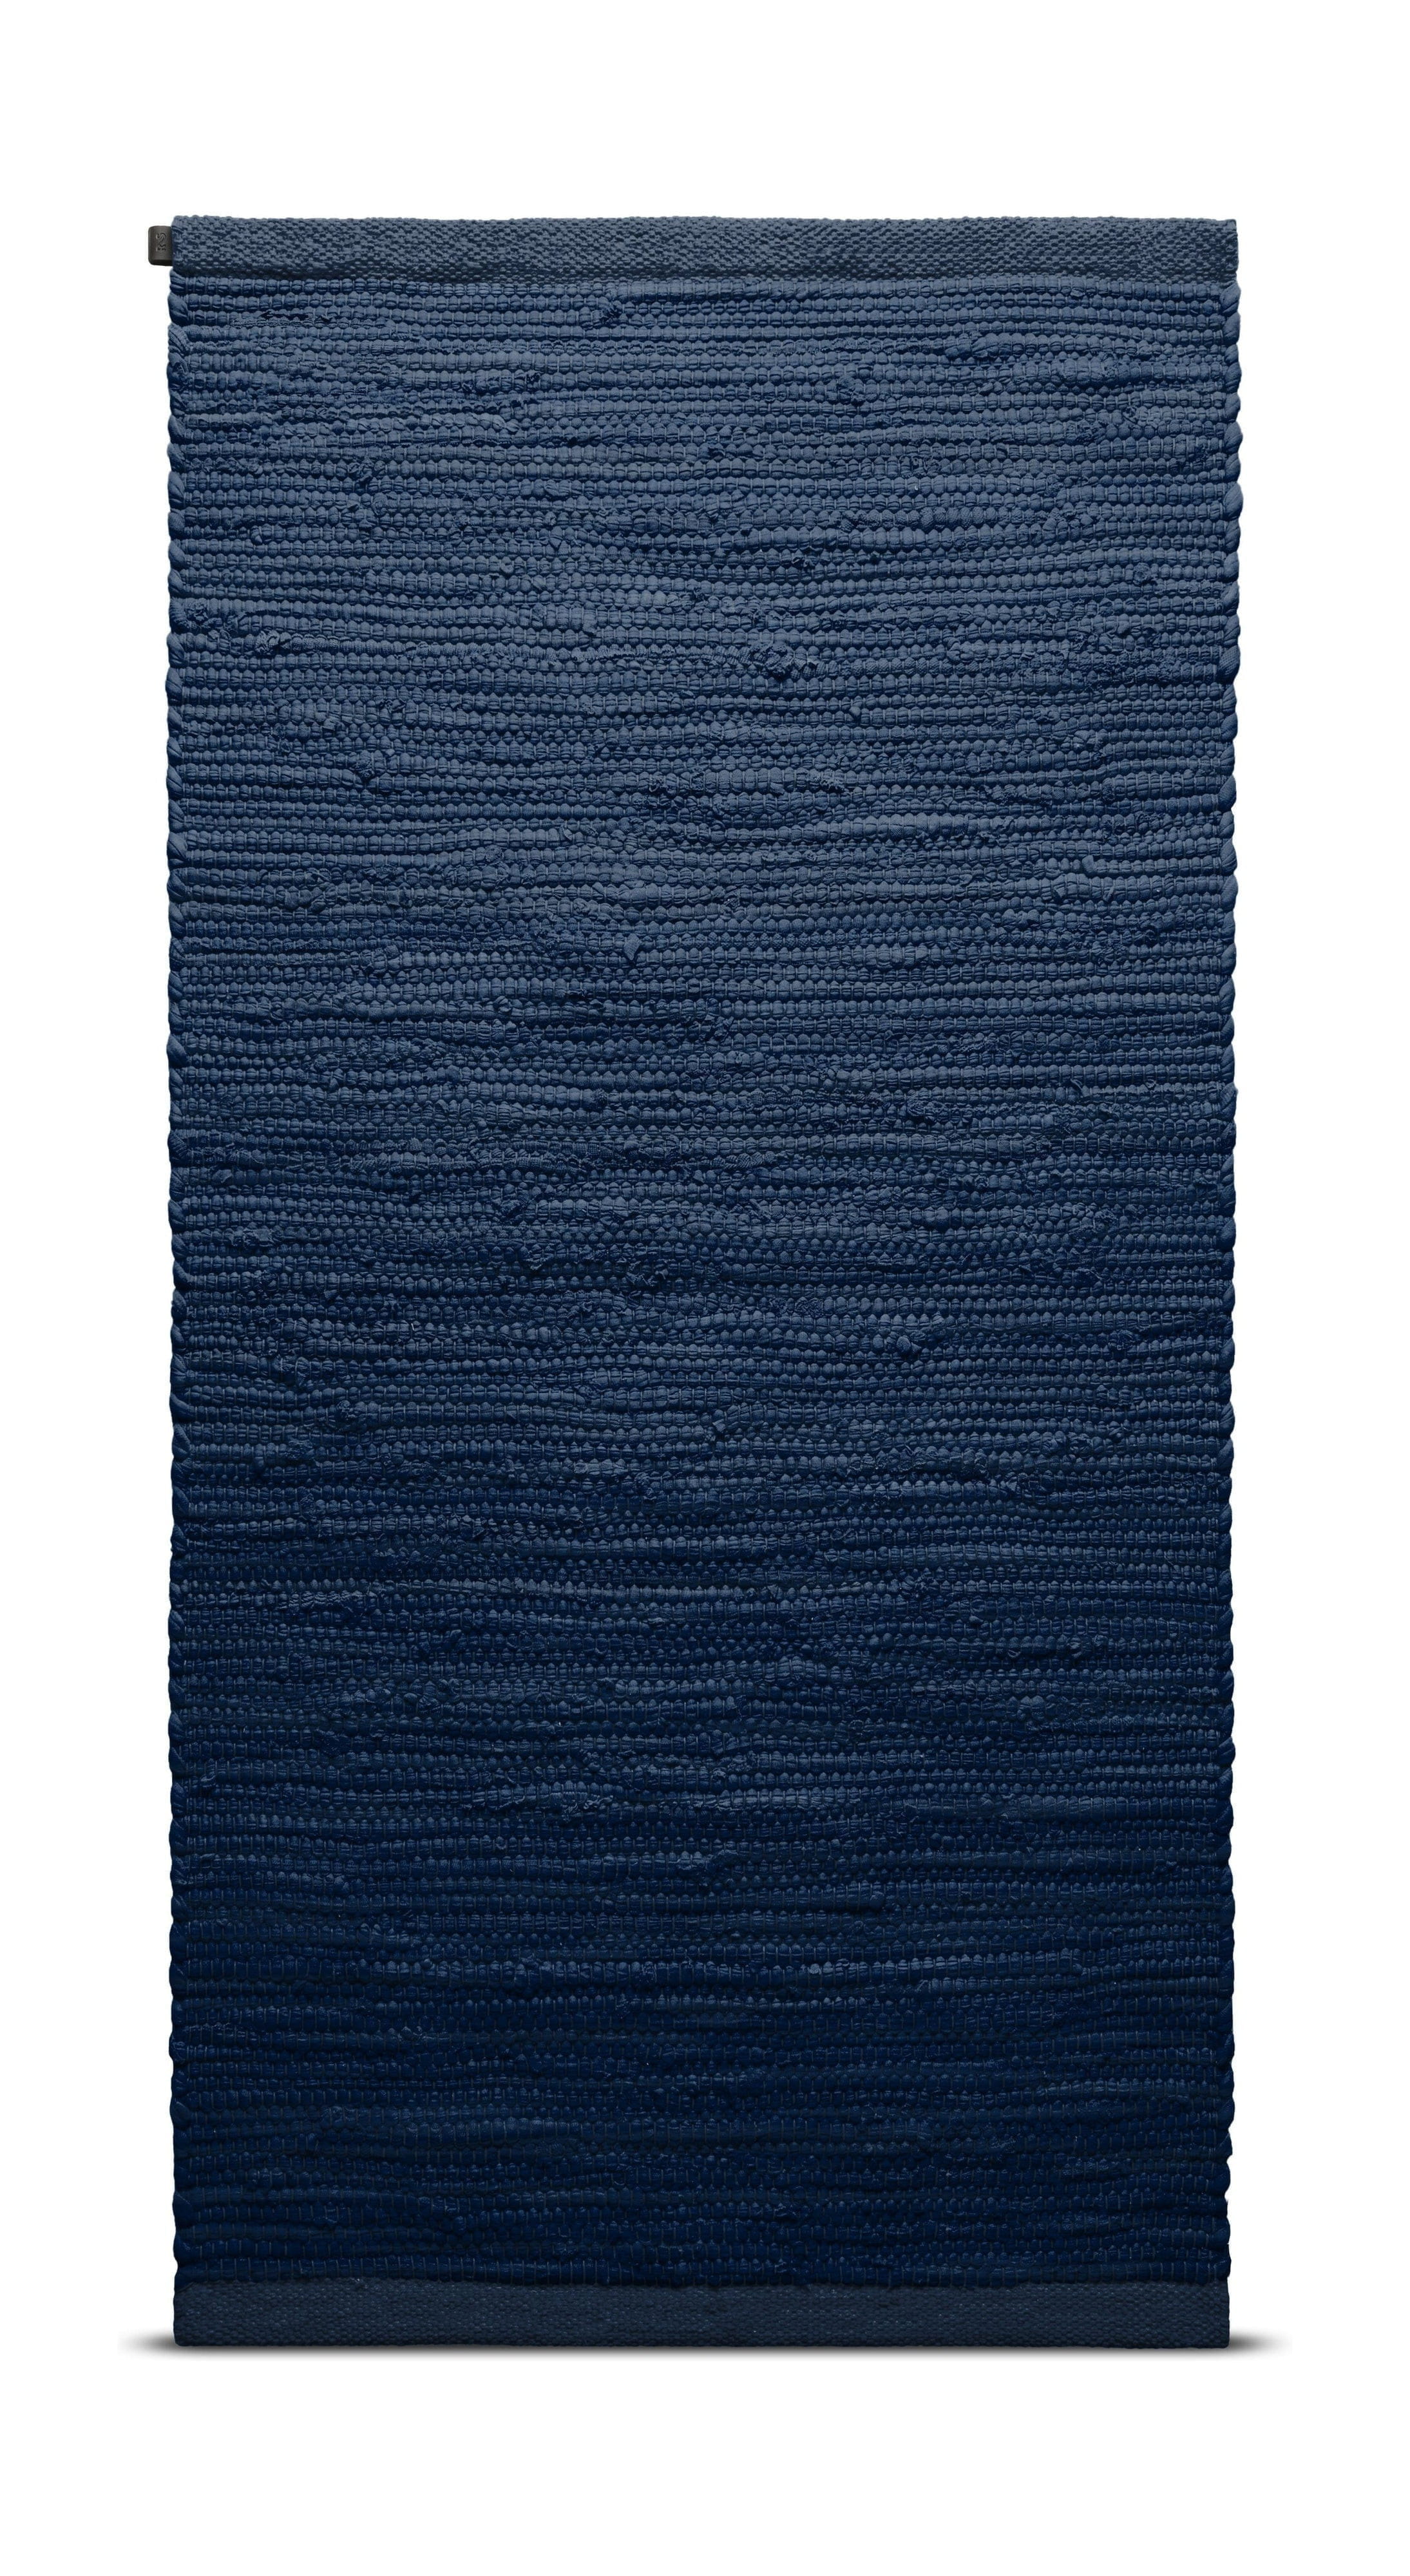 Rug Solid Bomullsmatta 75 x 200 cm, blåbär